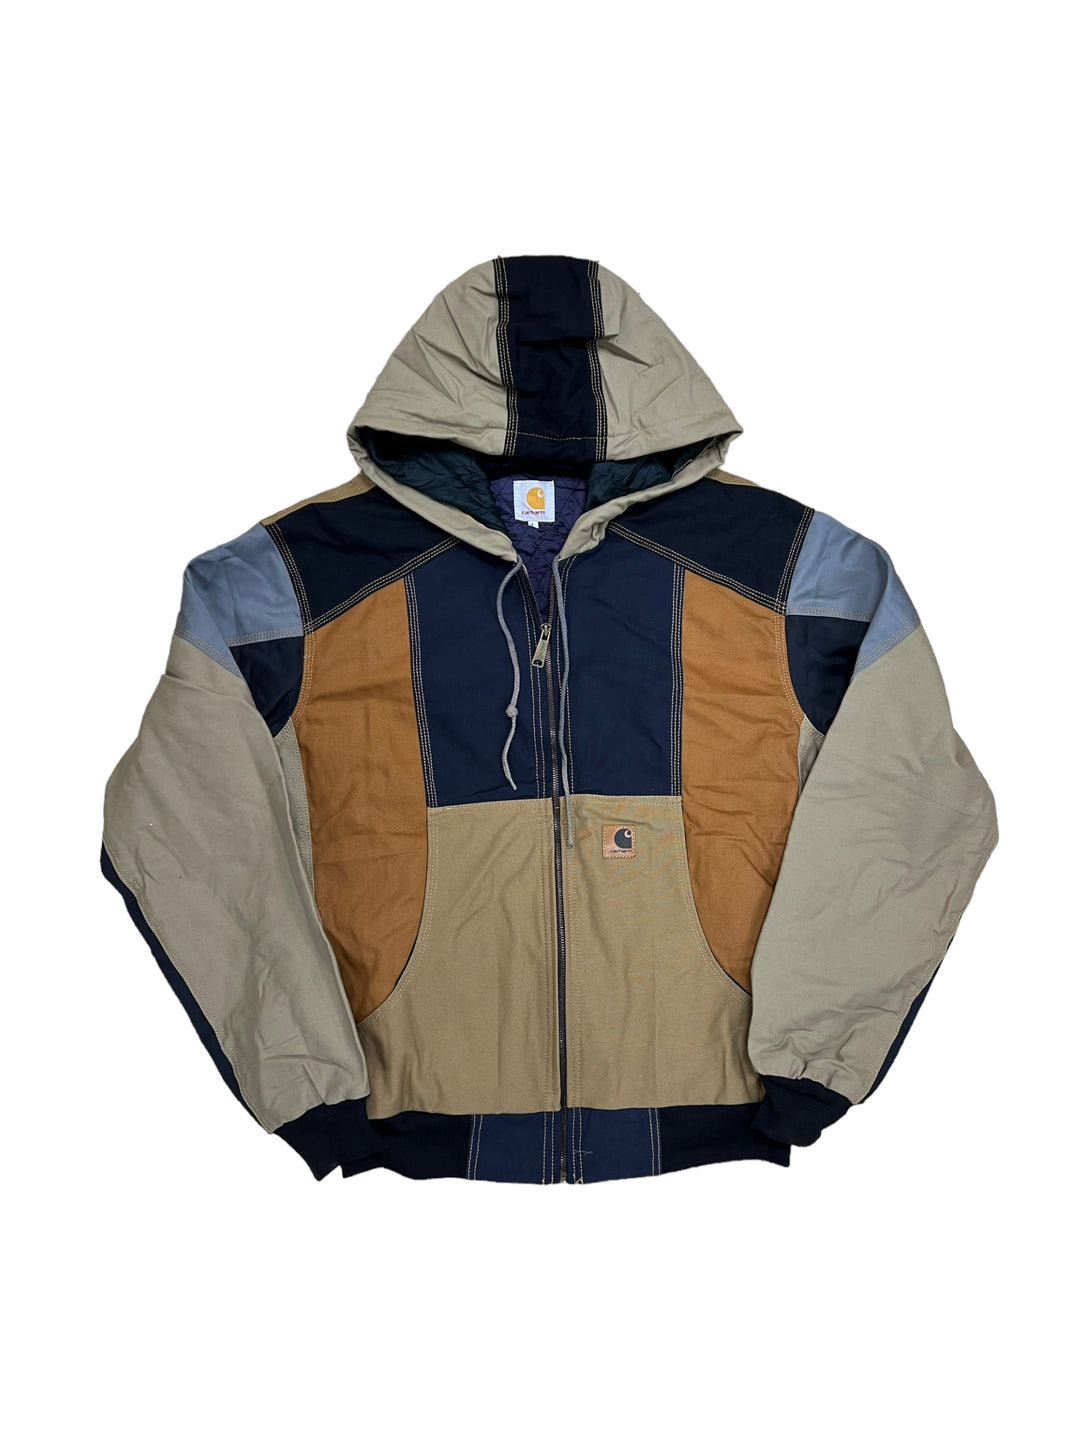 Vintage Reworked Patchwork Carhartt Detroit Work Jacket Men’s Large